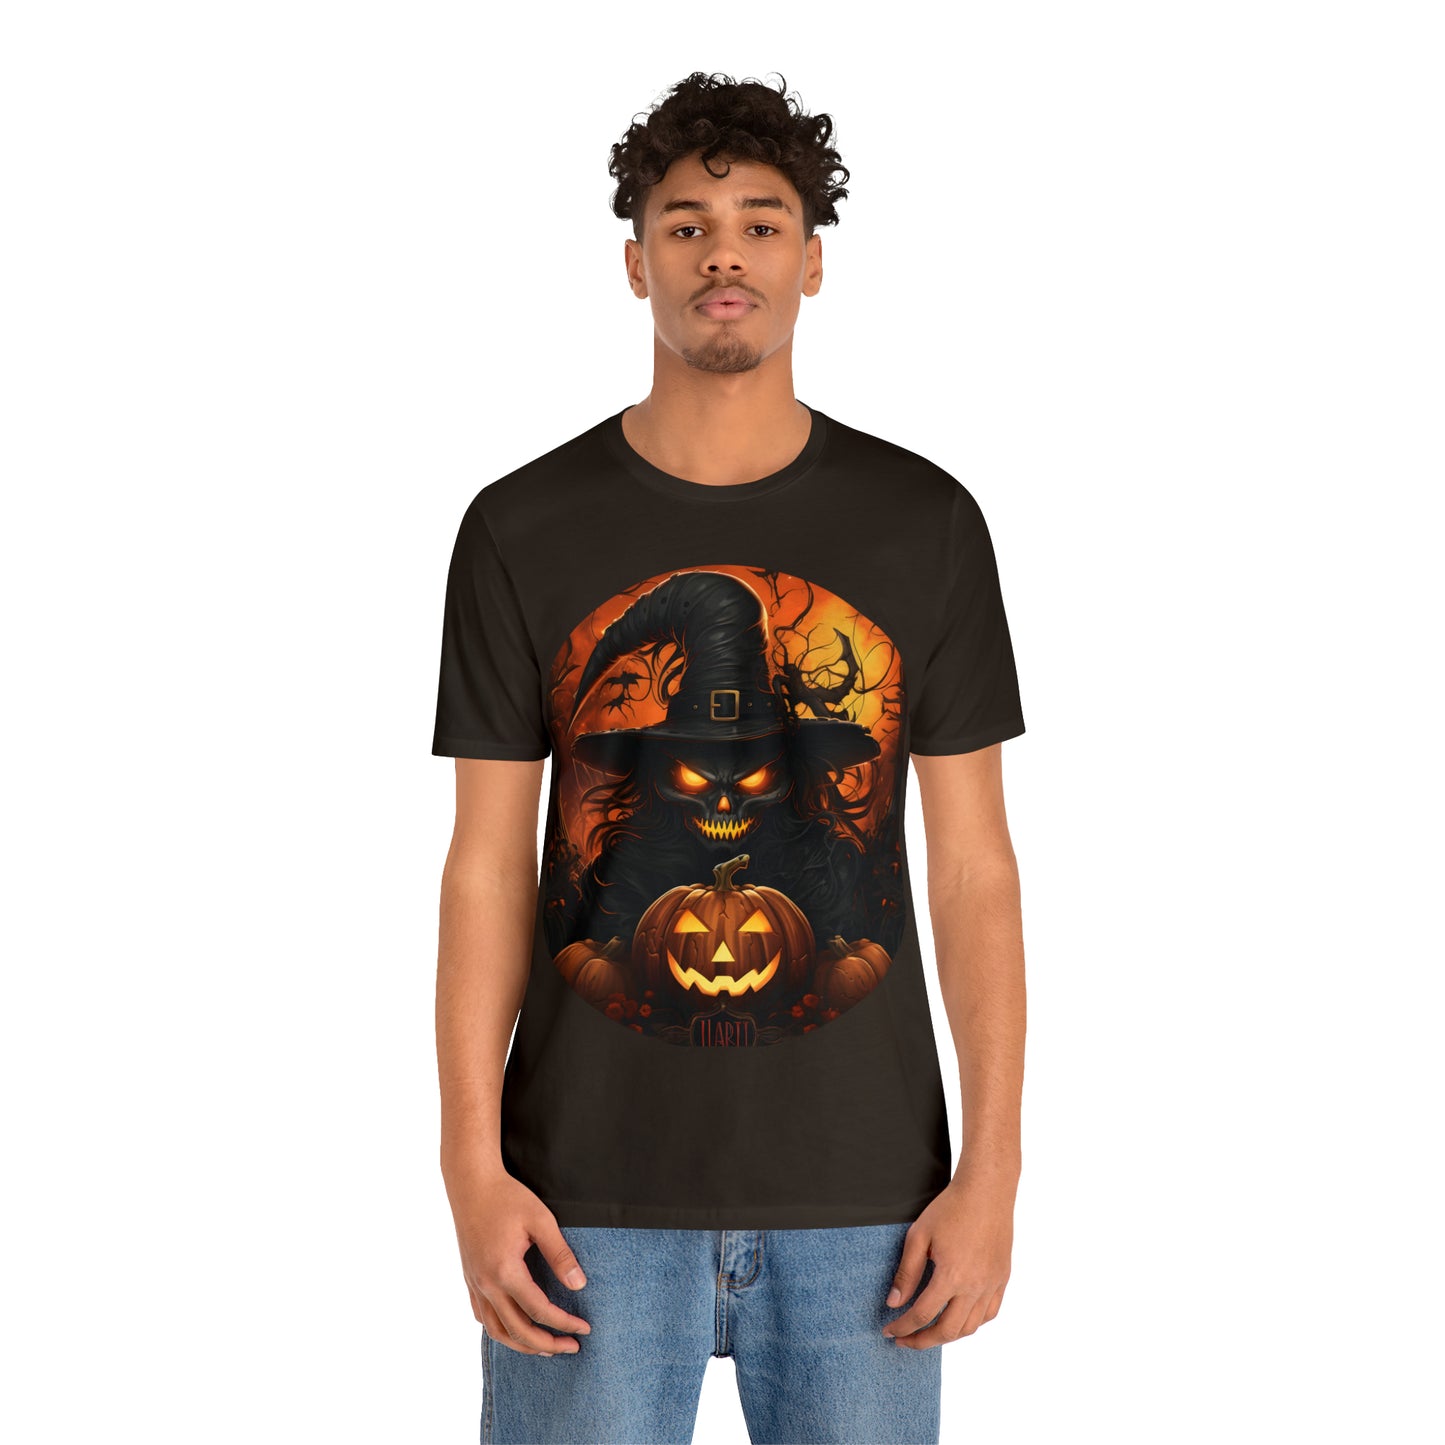 Spooky Jack O Lantern Pumpkin Face Shirt Pumpkin Face Halloween Costume Scary Faces, Pumpkin Silhouette, Vintage Shirt Halloween Shirt